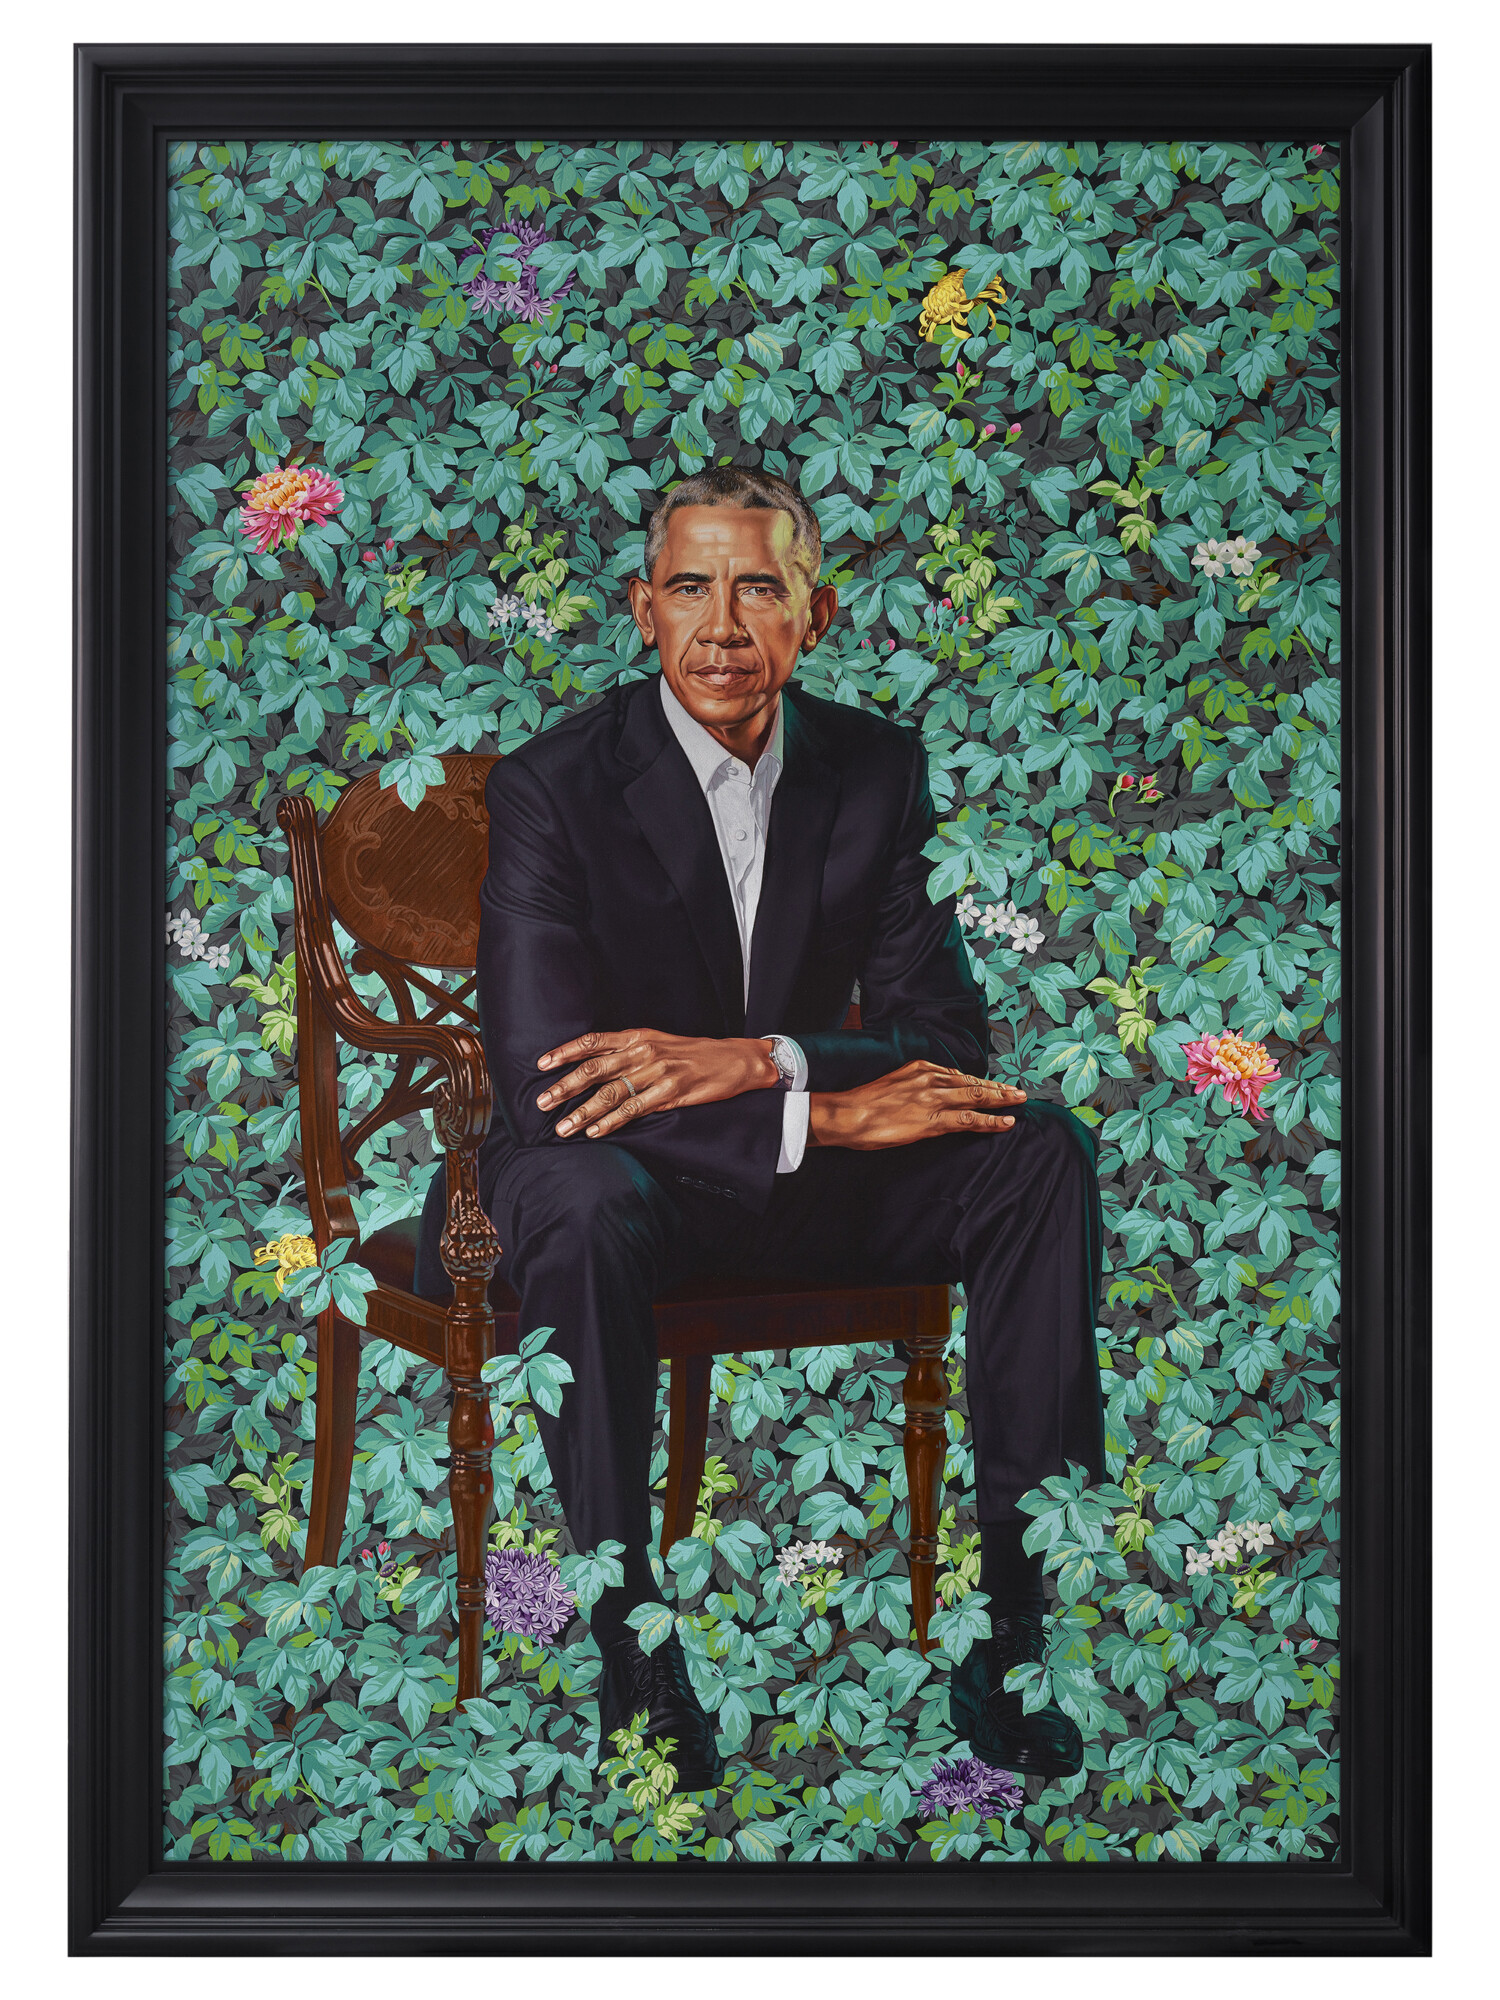 kehindewiley_Official_Portrait_of_President_Barack_Obama_Barack_Obama